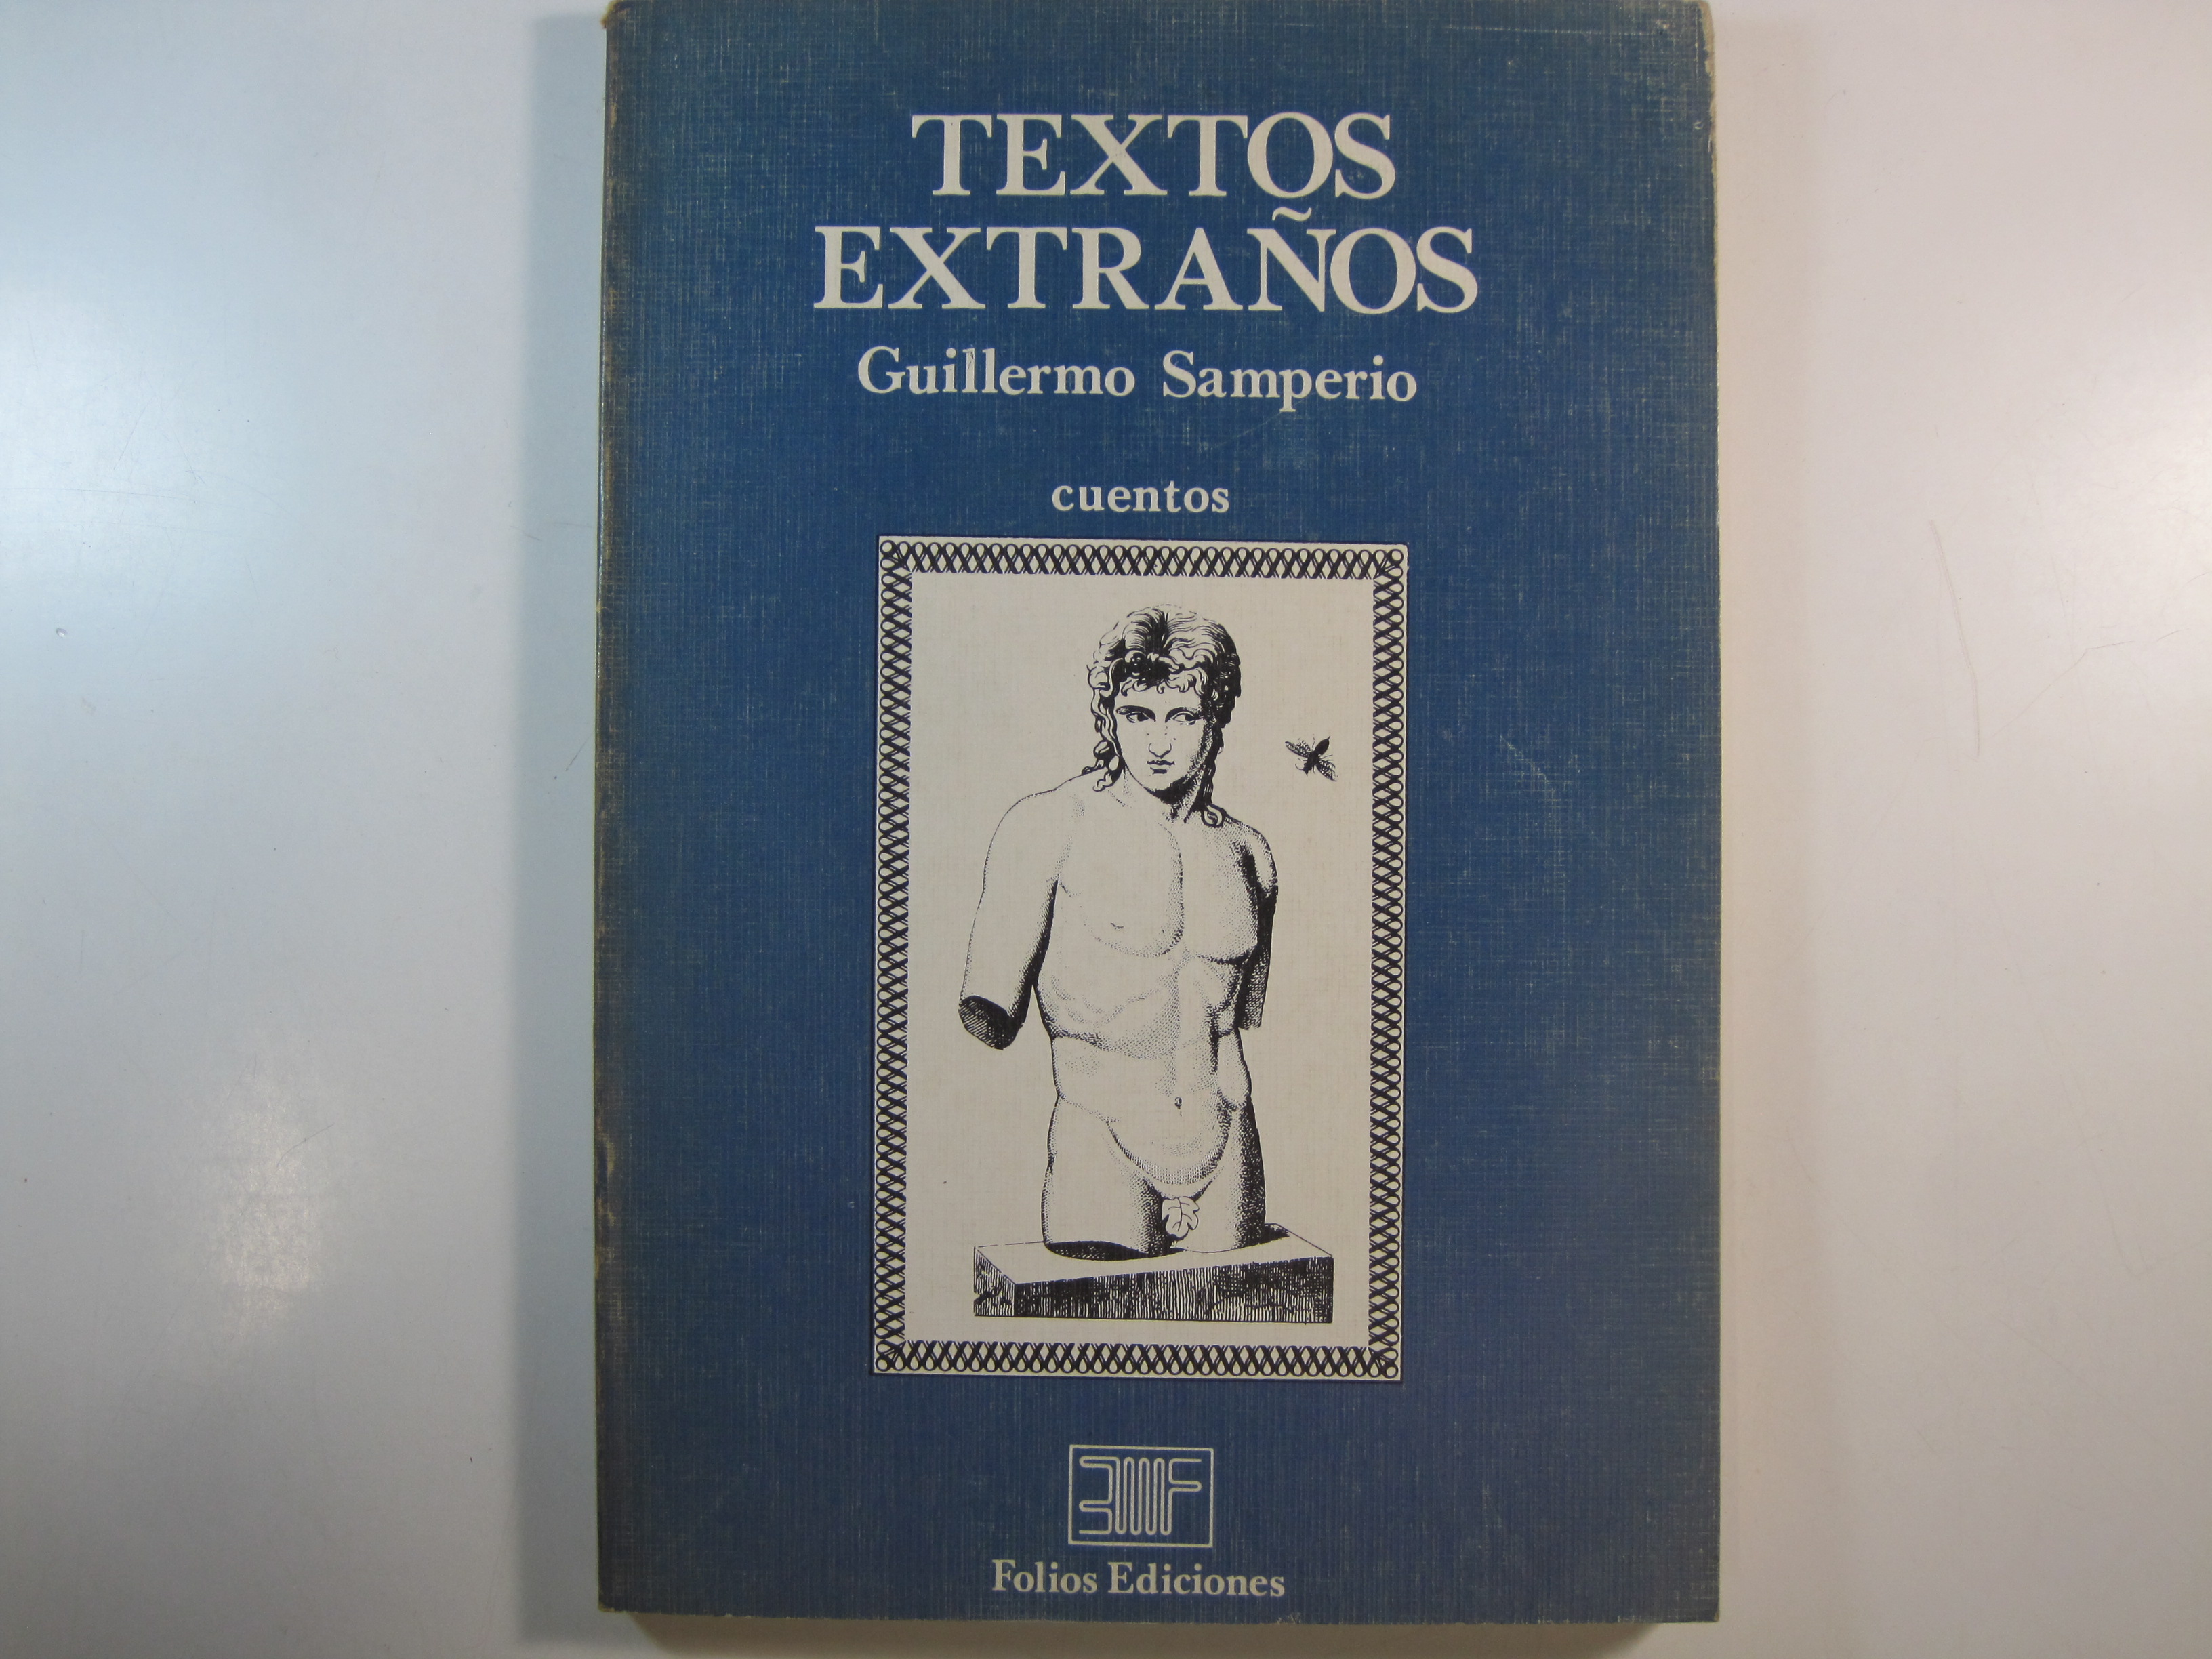 TEXTOS EXTRAÑOS. CUENTOS by GUILLERMO SAMPERIO | Costa LLibreter